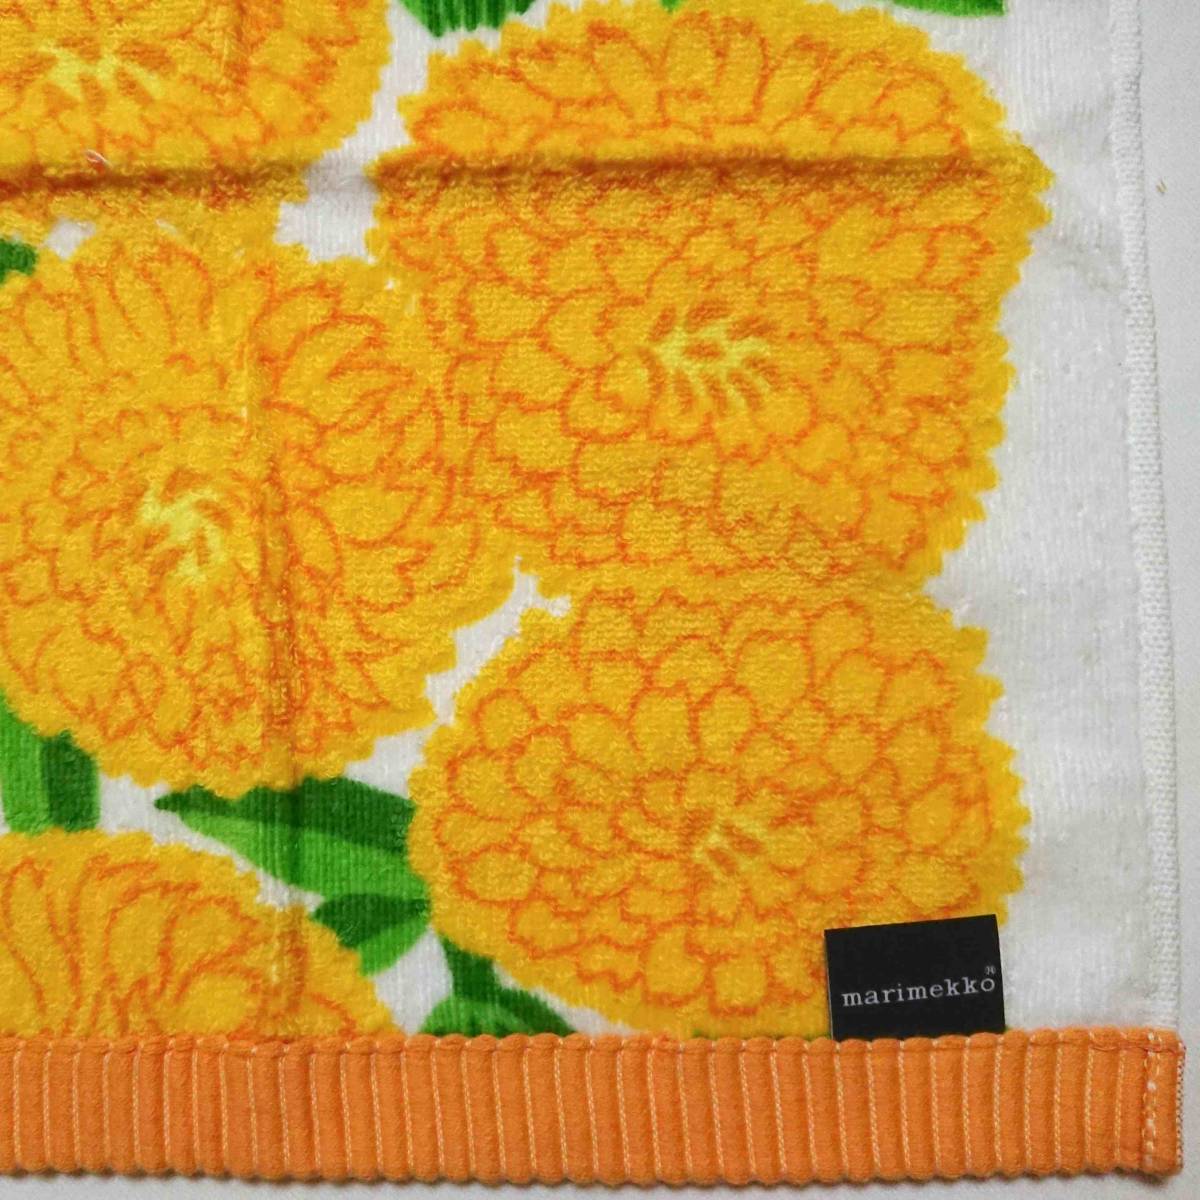  Marimekko Prima ve-la полотенце для рук woshu полотенце желтый marimekko PRIMAVERA сделано в Японии новый товар не использовался 